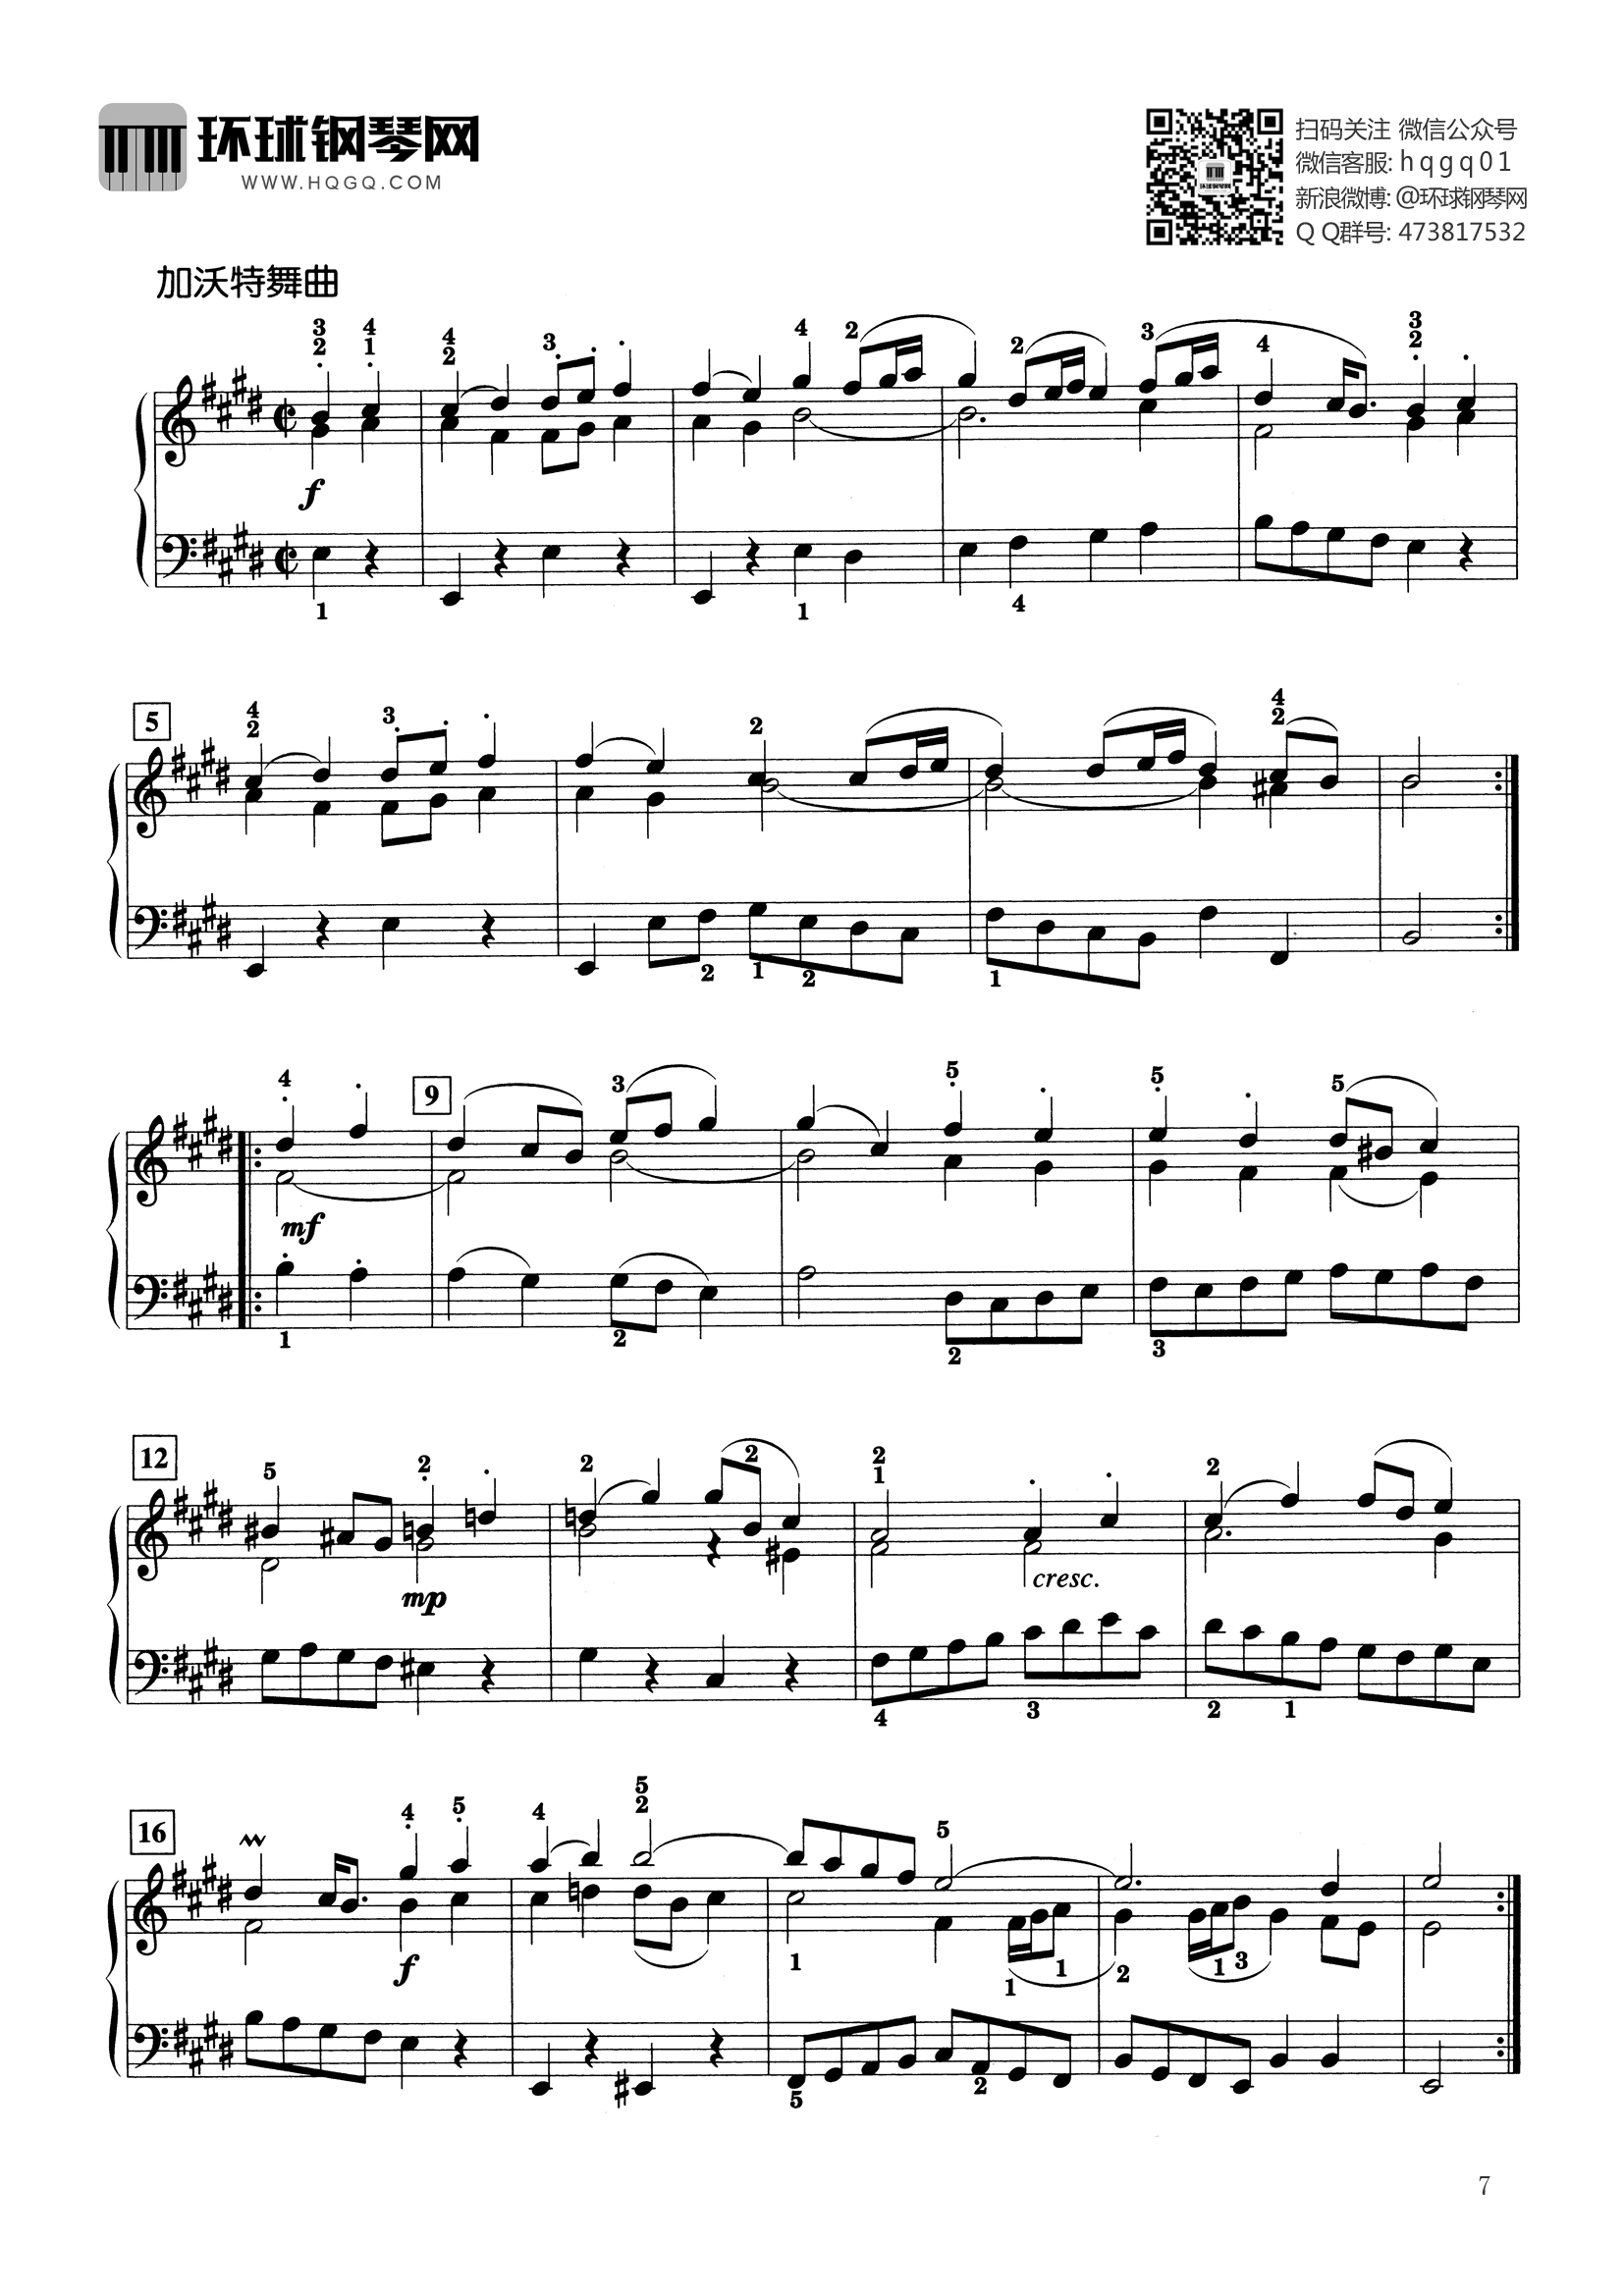 法国民歌钢琴曲谱图片